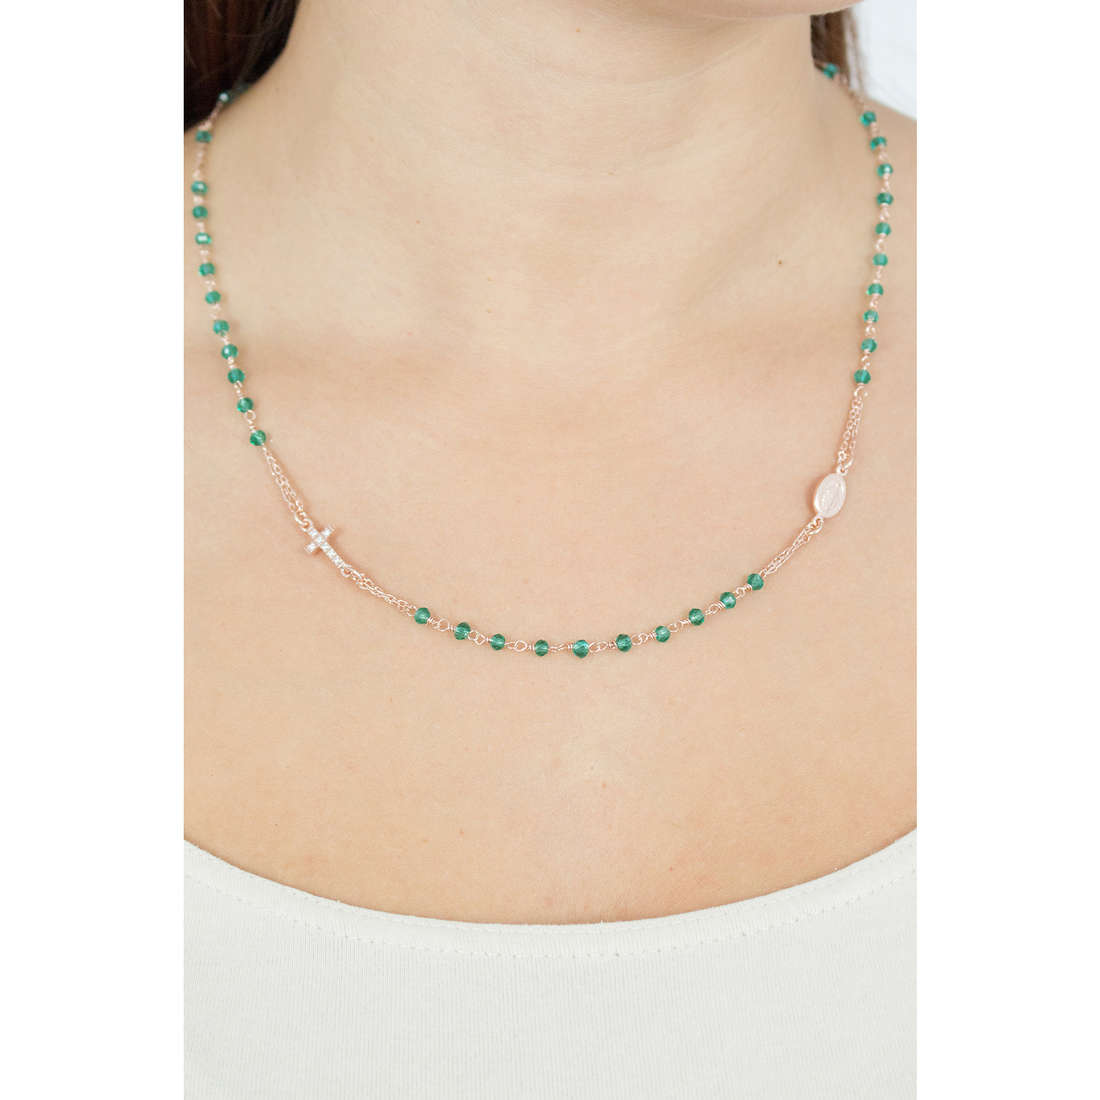 ollana amen CRORVZ3 rosario verde cristalli verdi e argento 925 rosè con croce zirconi bianchi e ovale con rappresentazione mariana. Visuale indossata su collo